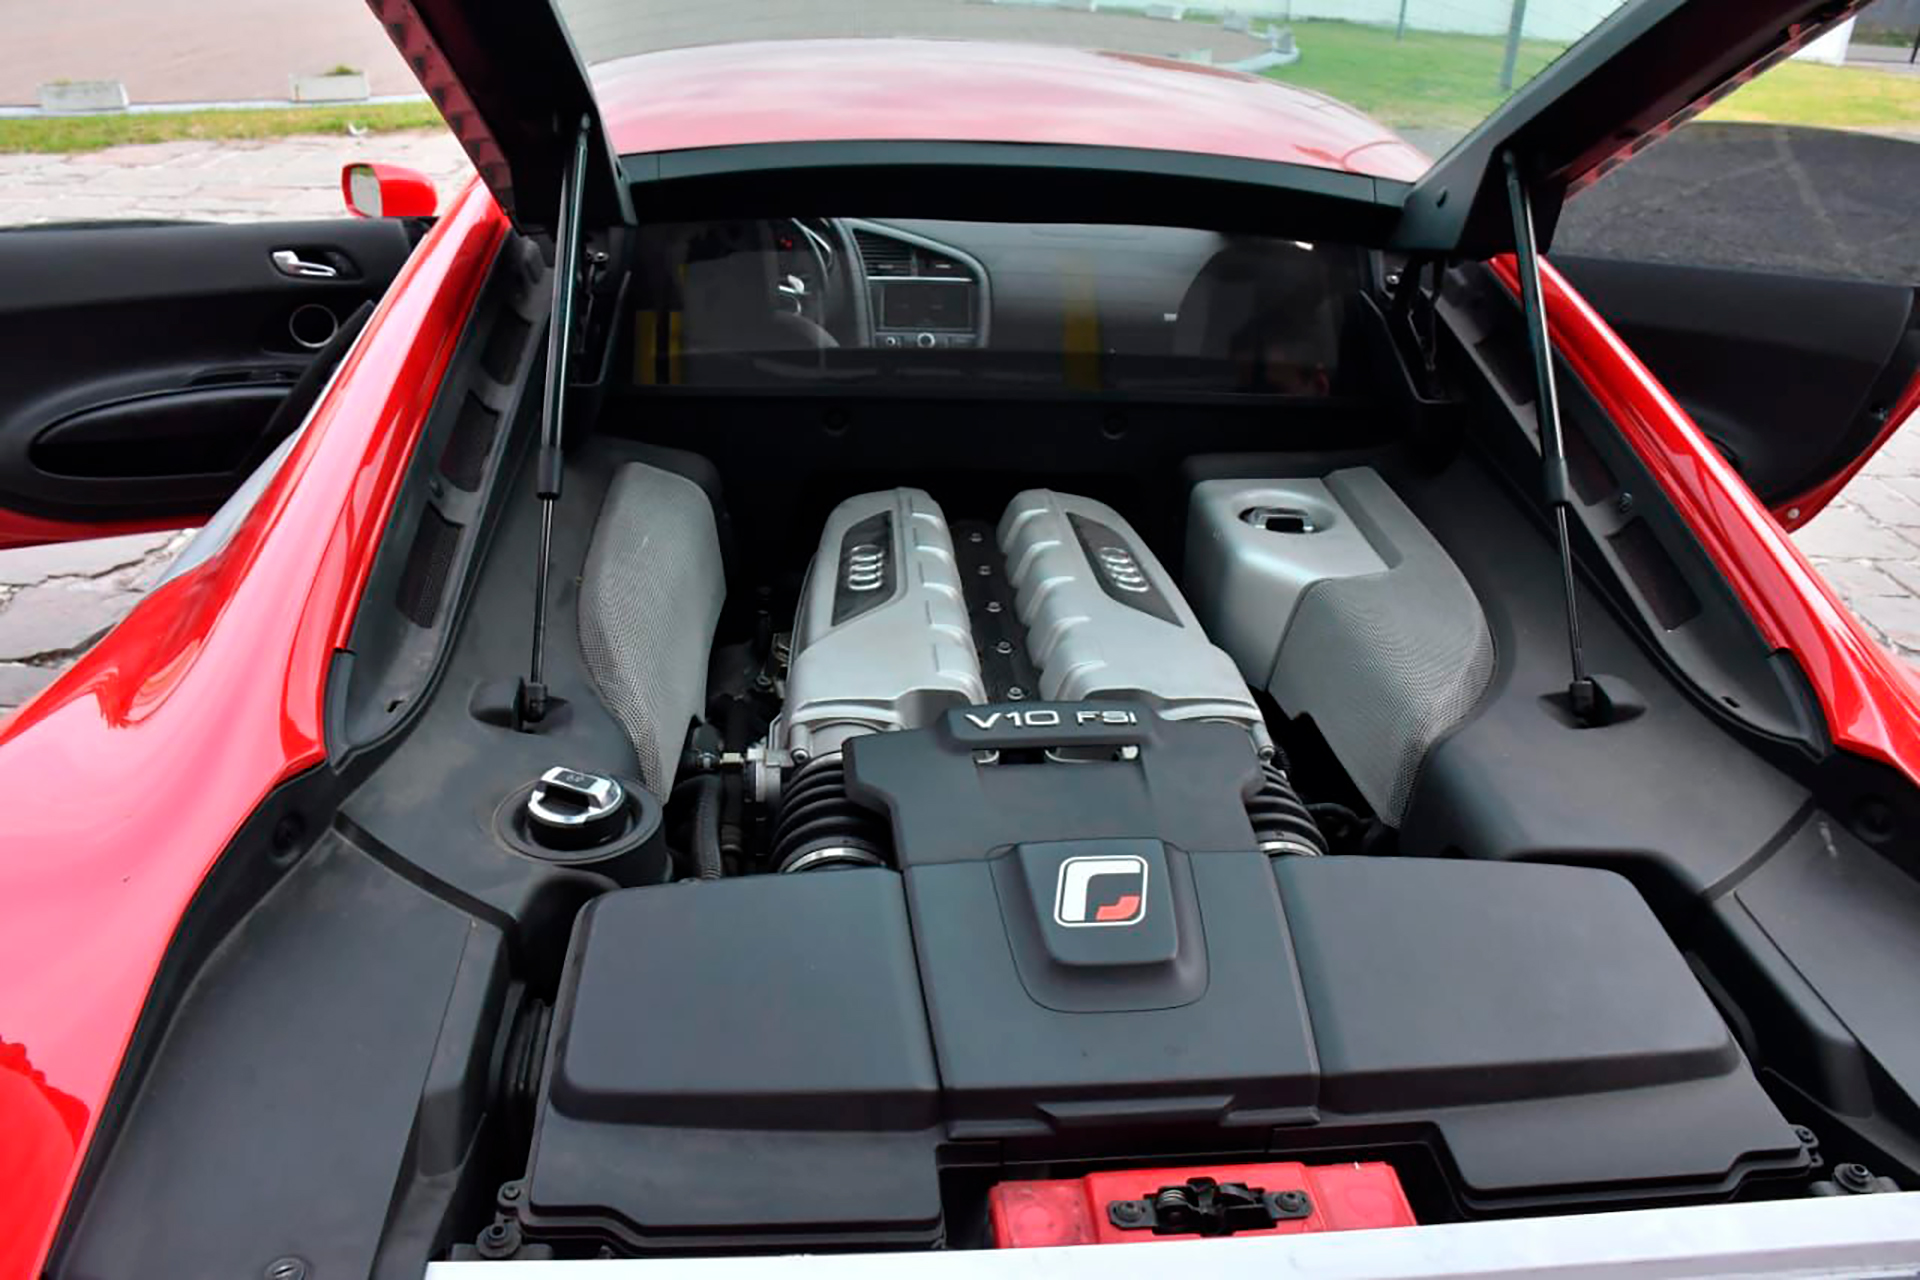 El automóvil es modelo 2014 y cuenta con 13.150 kilómetros, motor V10 de ubicación trasera central y un completo equipamiento